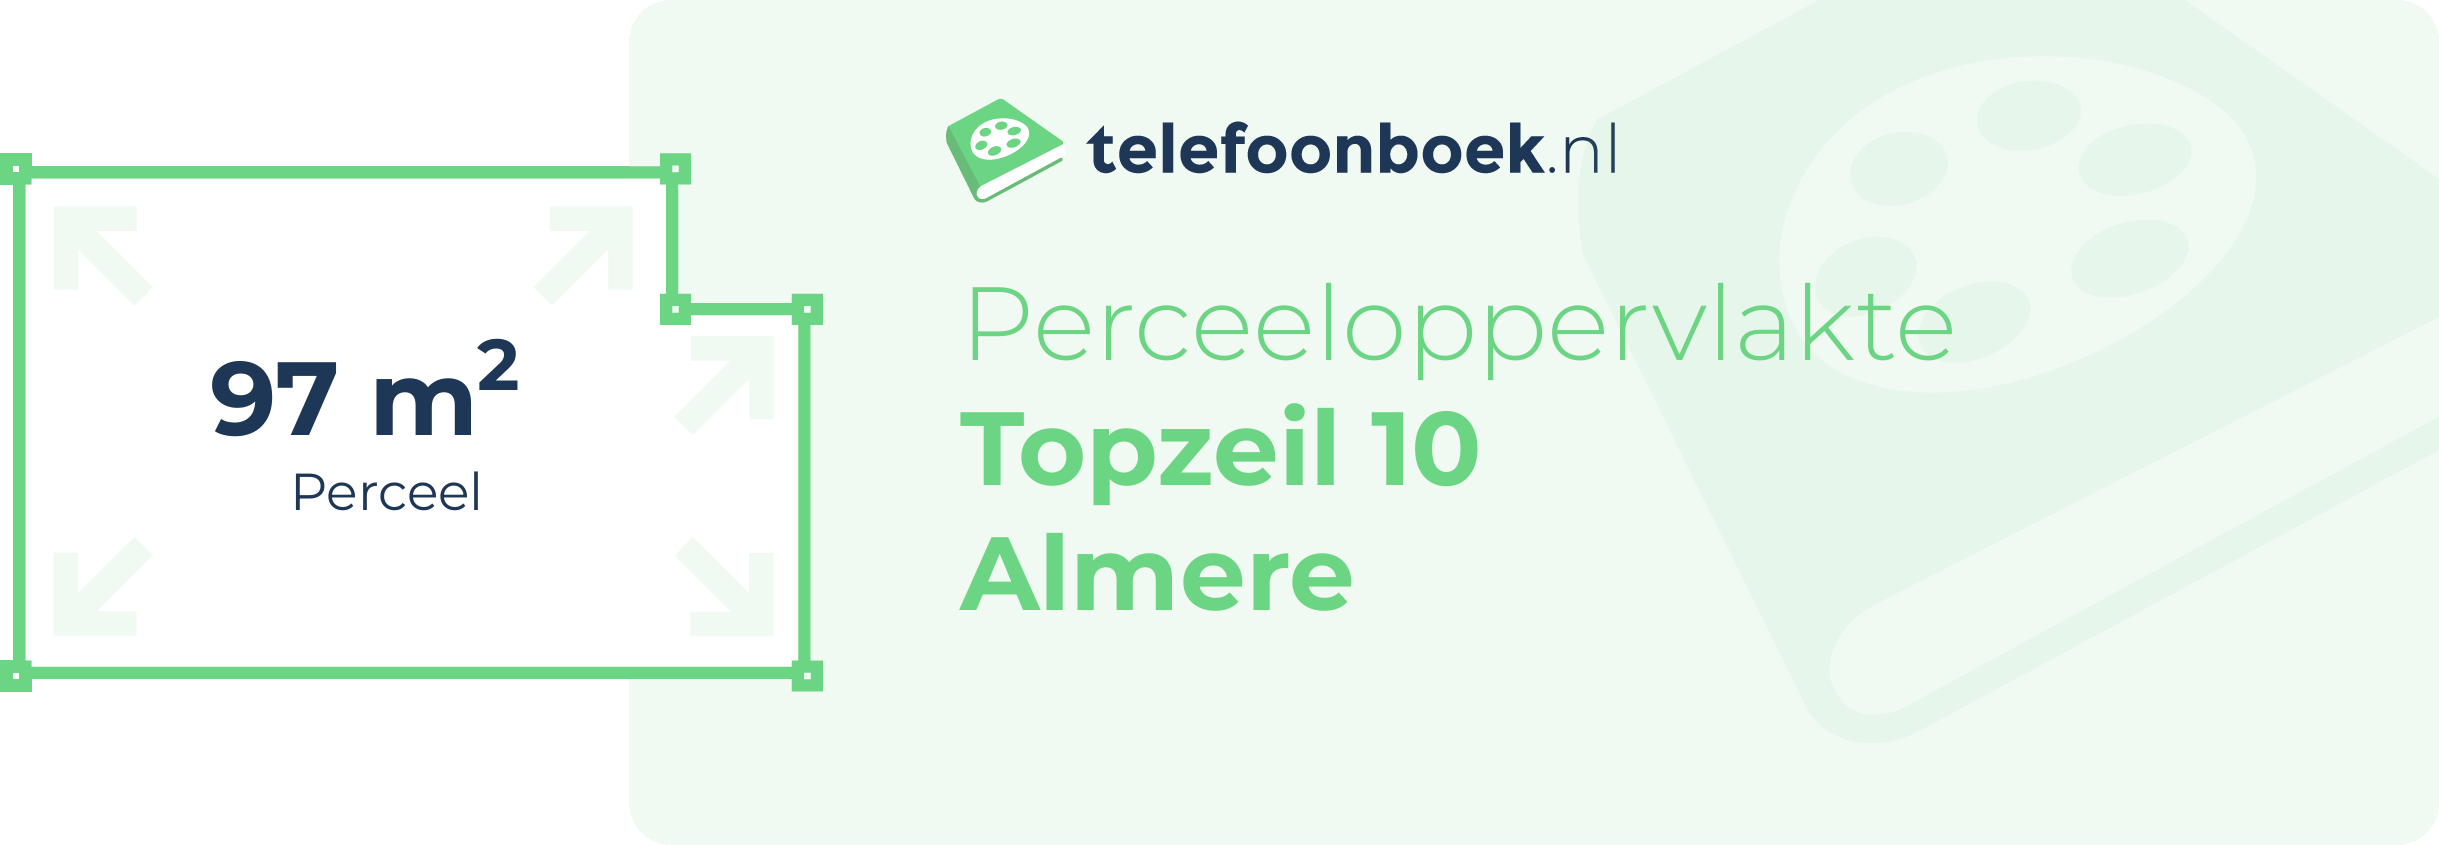 Perceeloppervlakte Topzeil 10 Almere